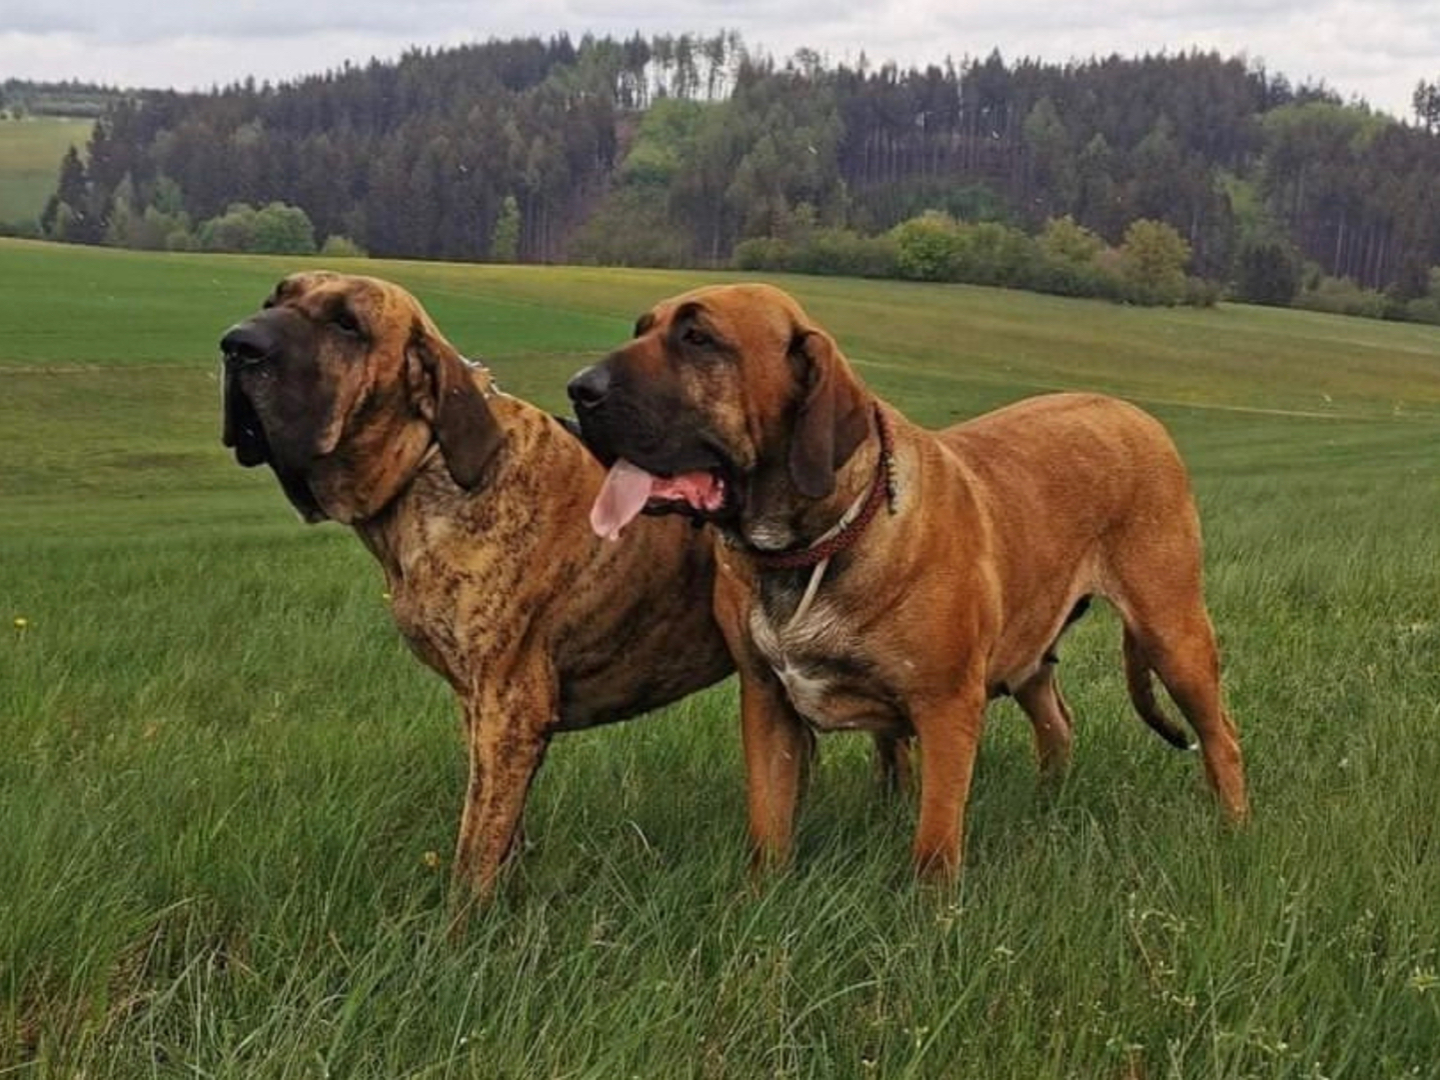 Two fila brasileiro dogs on a grass field